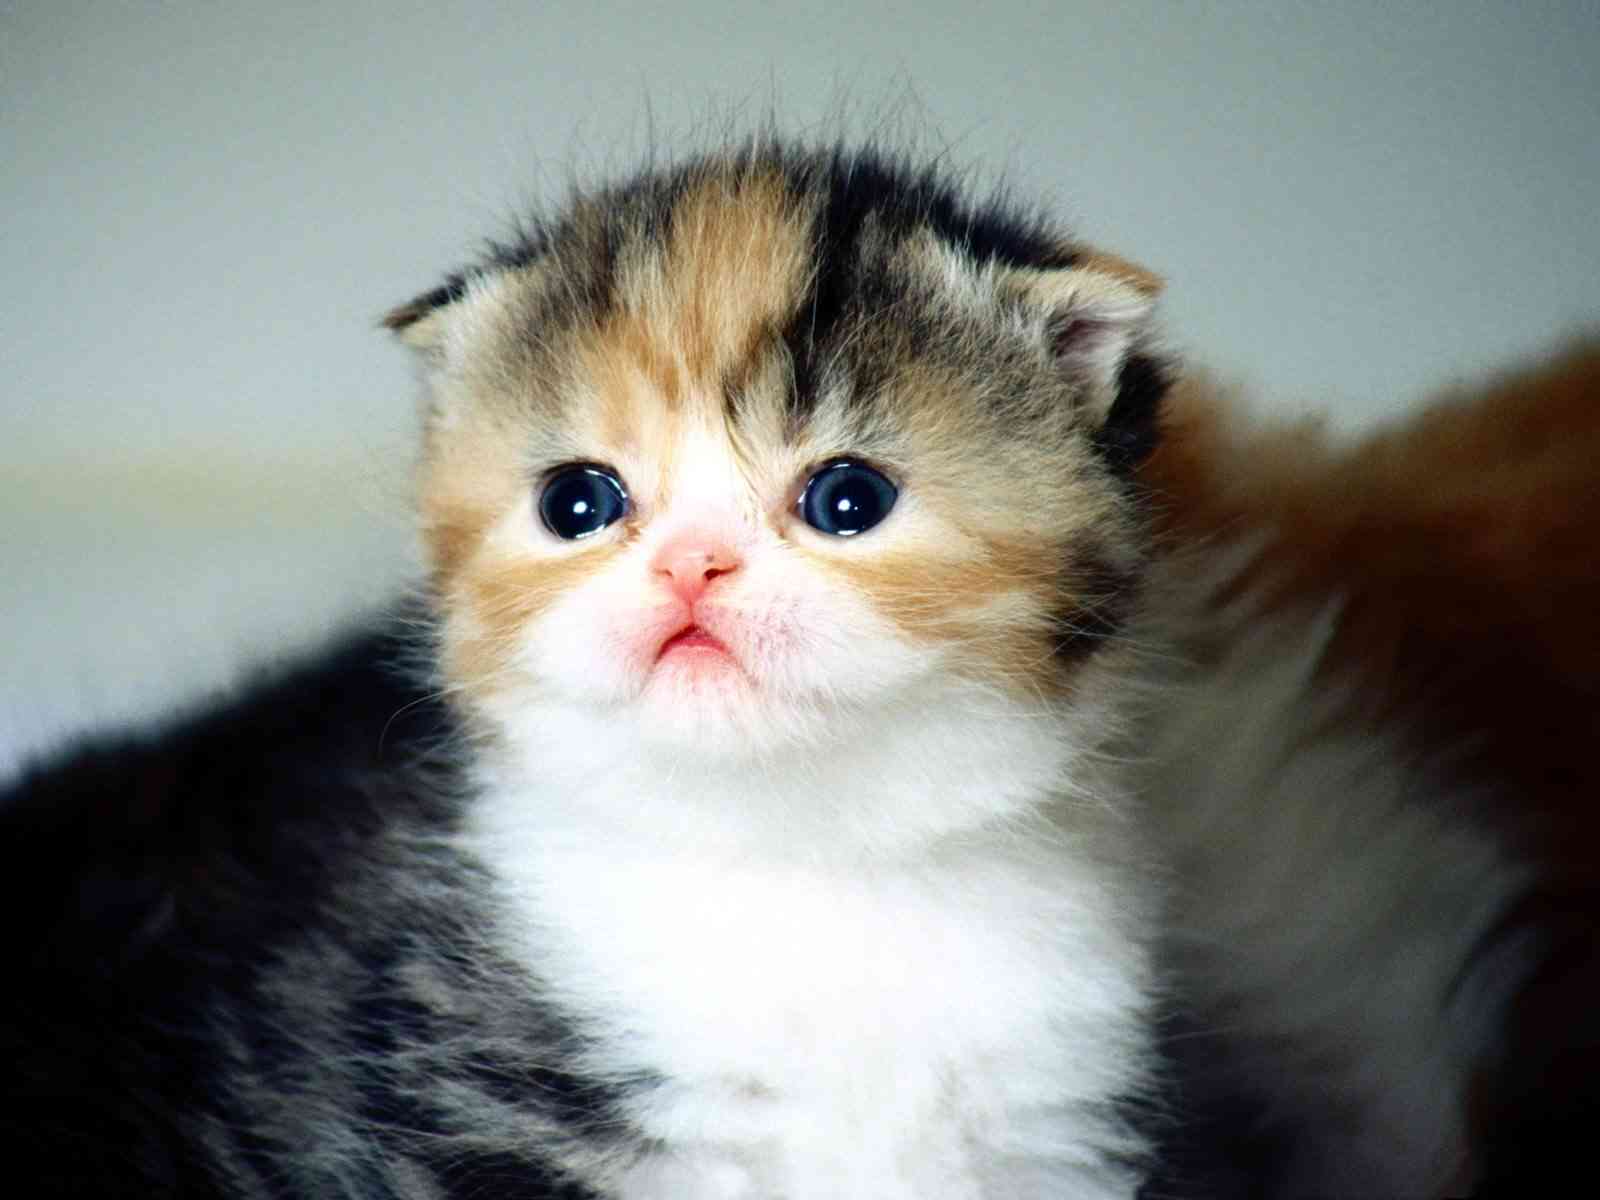 Cute Cat Photo Gallery